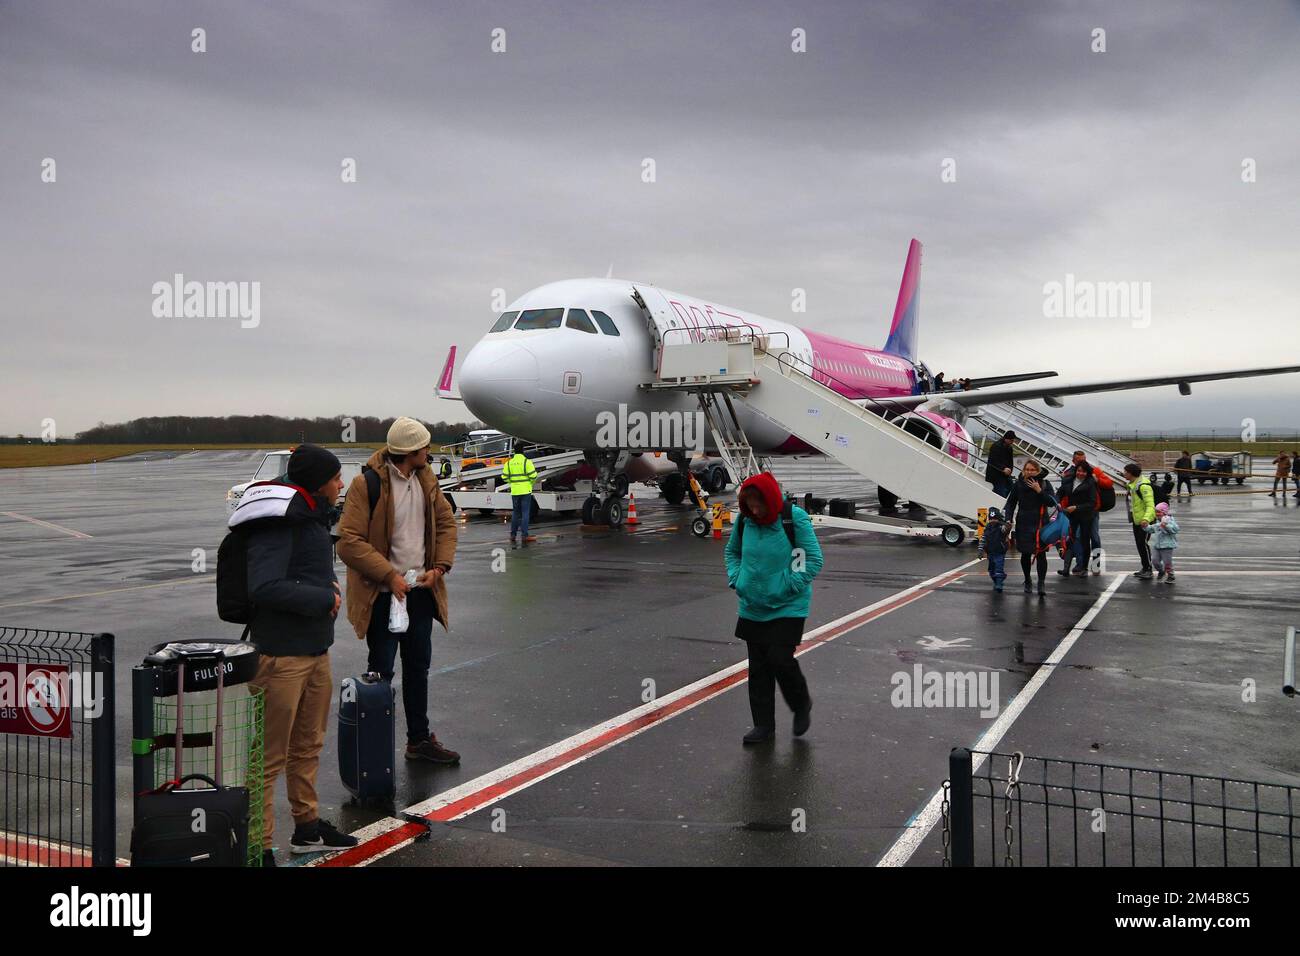 BEAUVAIS, FRANCIA - 11 DICEMBRE 2019: I passeggeri sbarcano dall'Airbus A320 sotto la pioggia della compagnia aerea a basso costo Wizzair all'aeroporto di Beauvais, Francia. Imbarco b Foto Stock